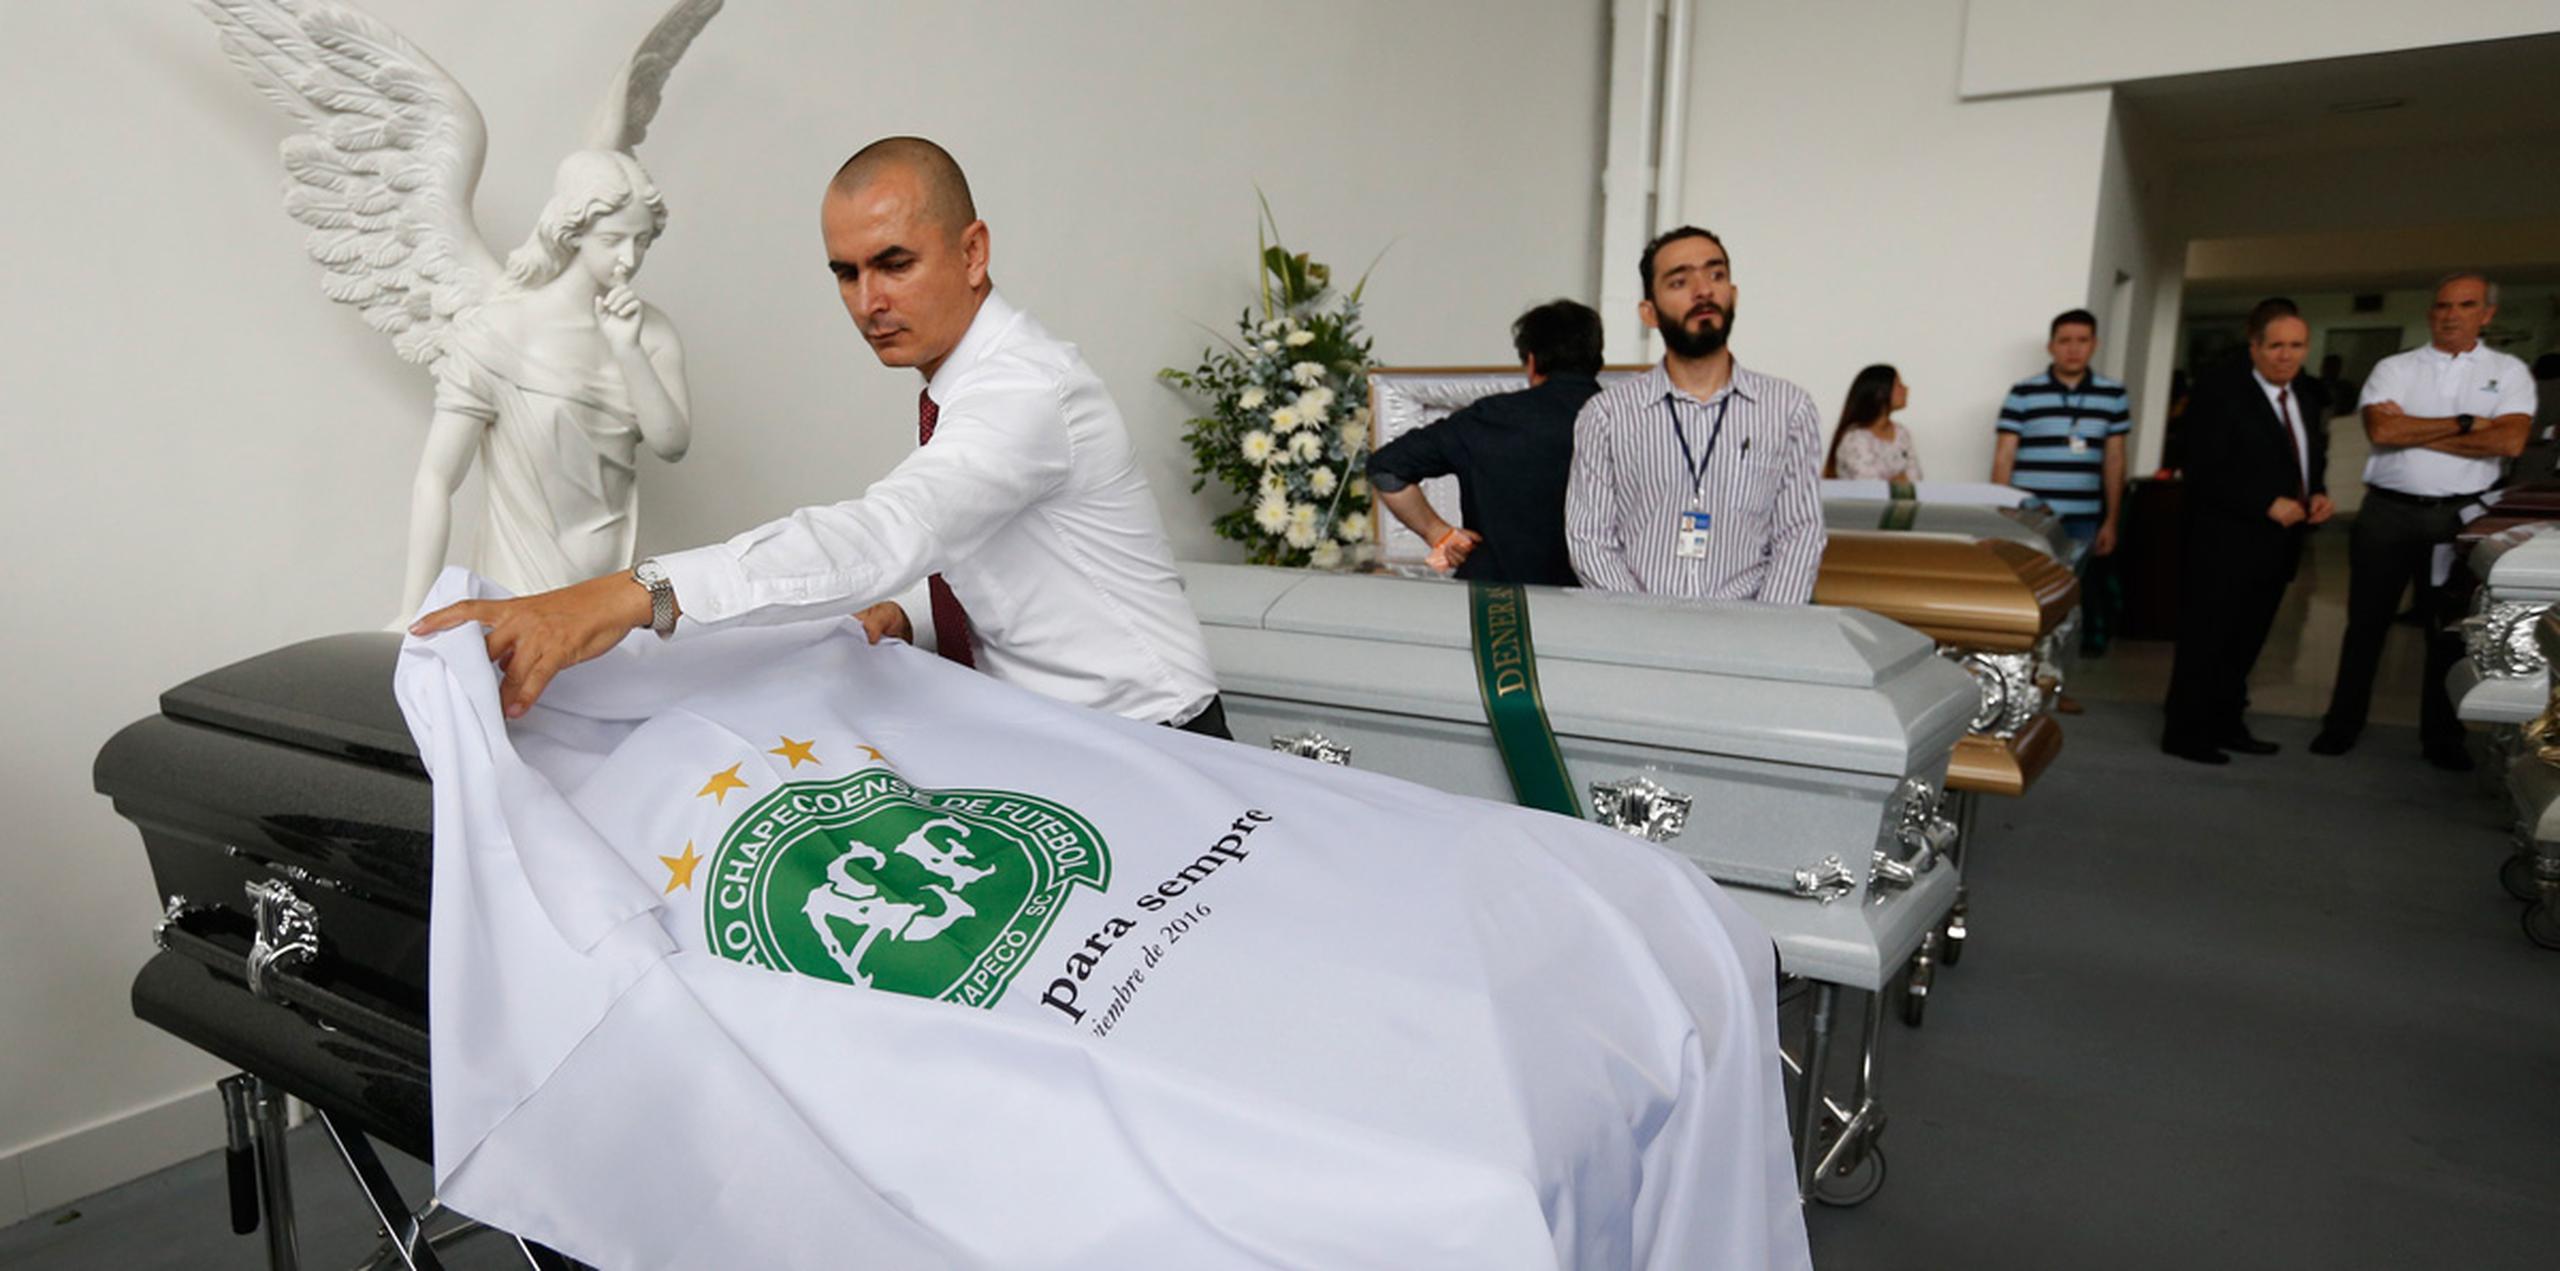 El jueves, sábanas blancas con el logo del club cubrían una fila de féretros en una funeraria de Medellín.  (AP)